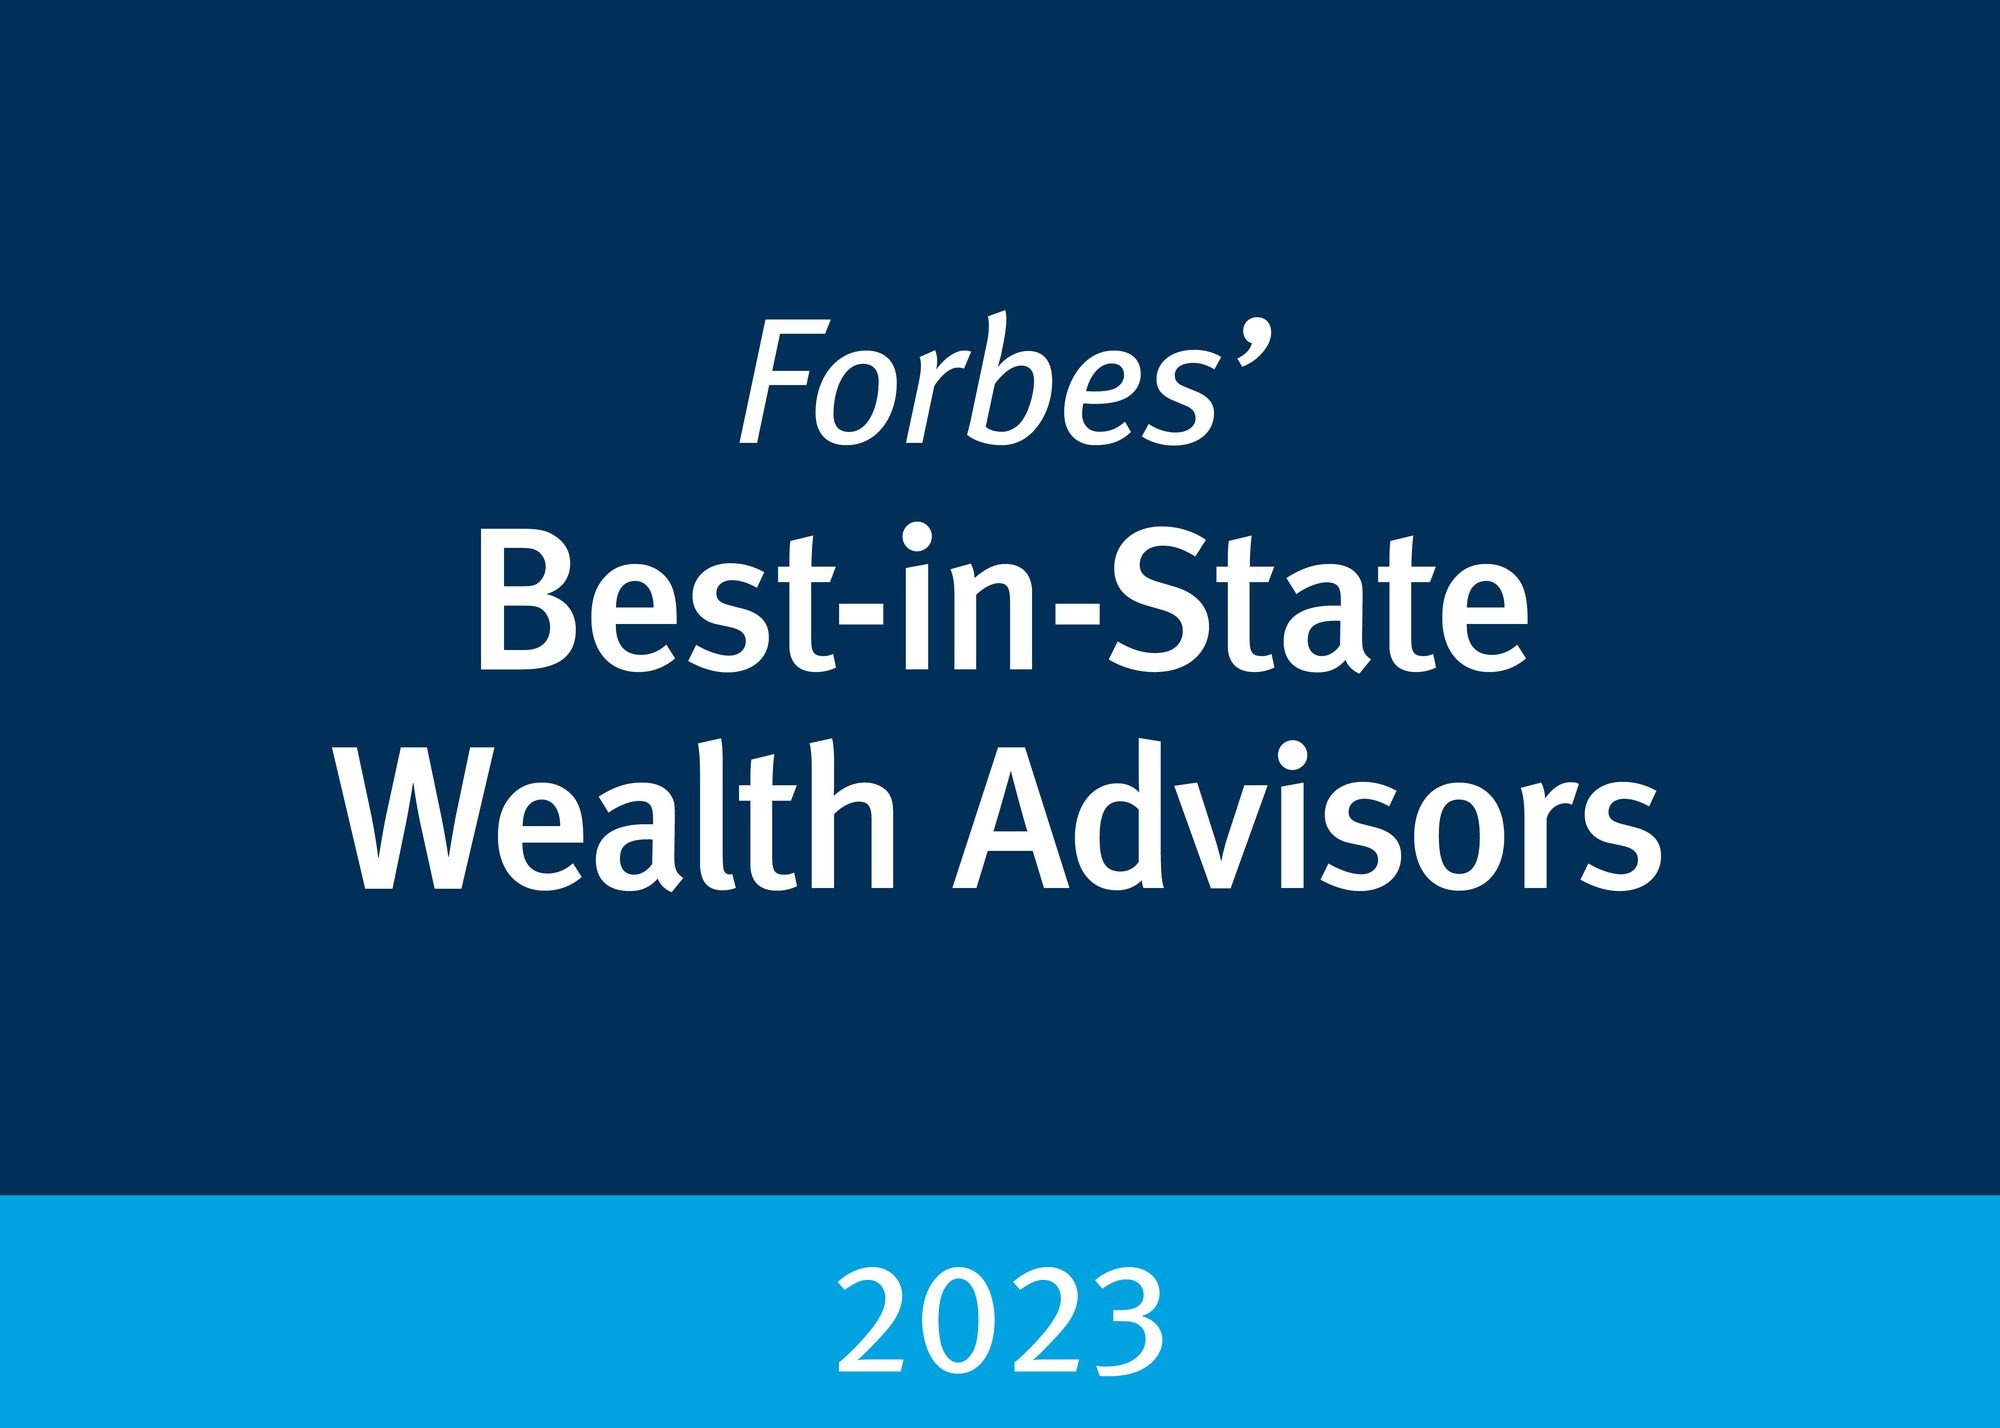 ForbesBestInStateWealthAdvisors.jpg